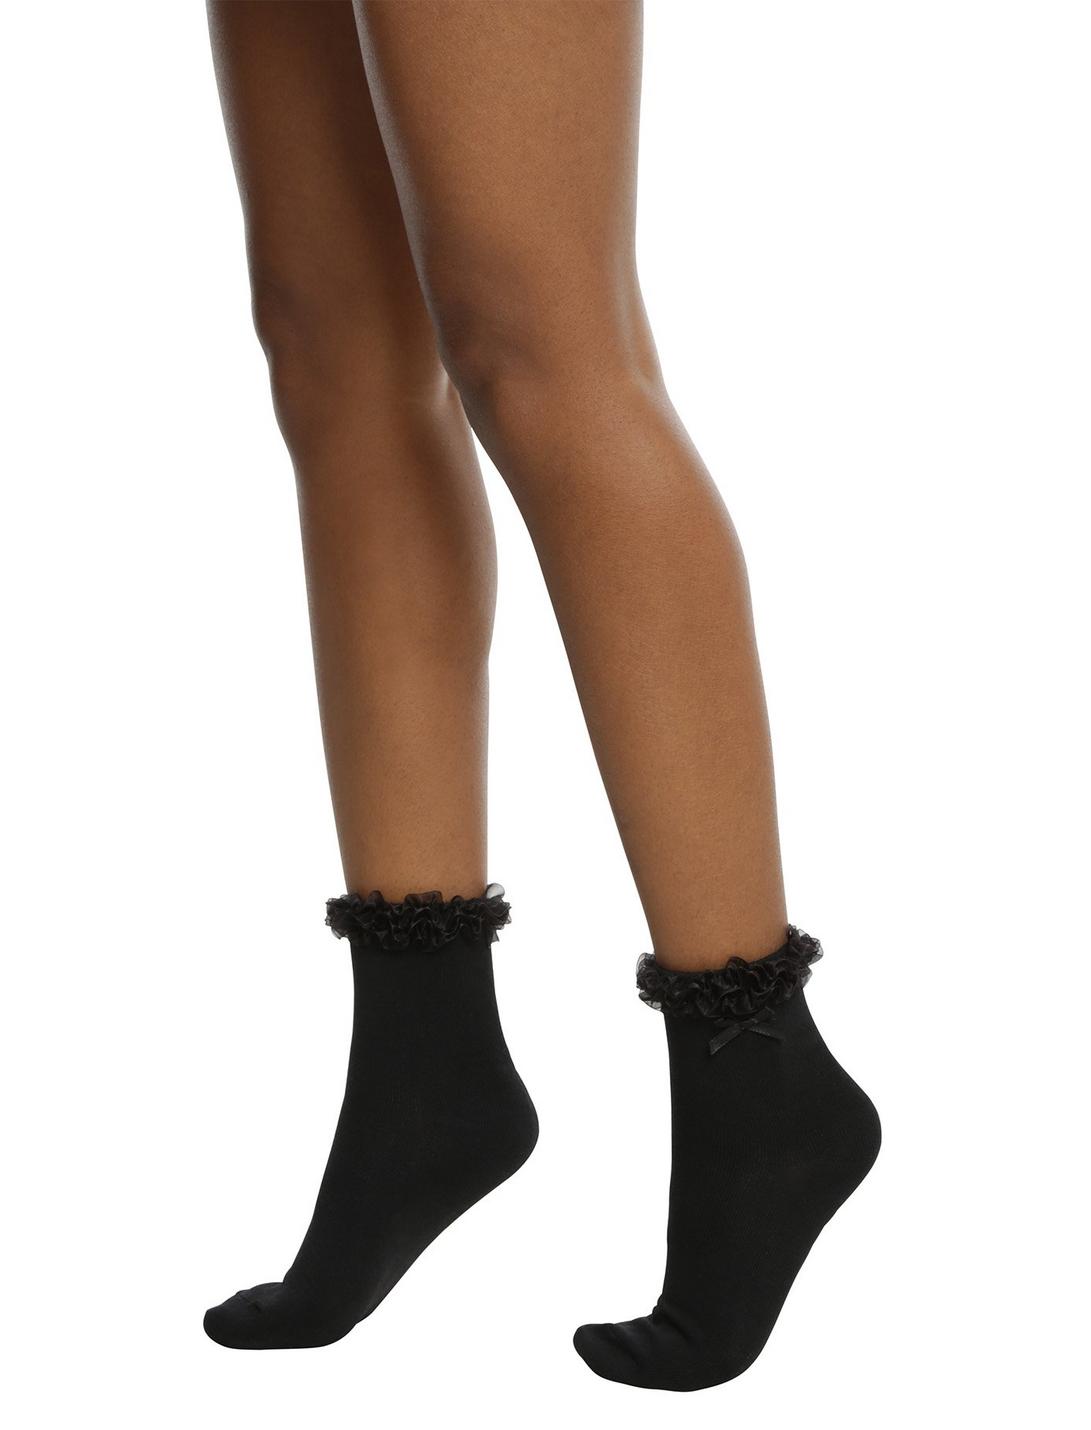 Blackheart Black Ruffle Ankle Socks, , hi-res